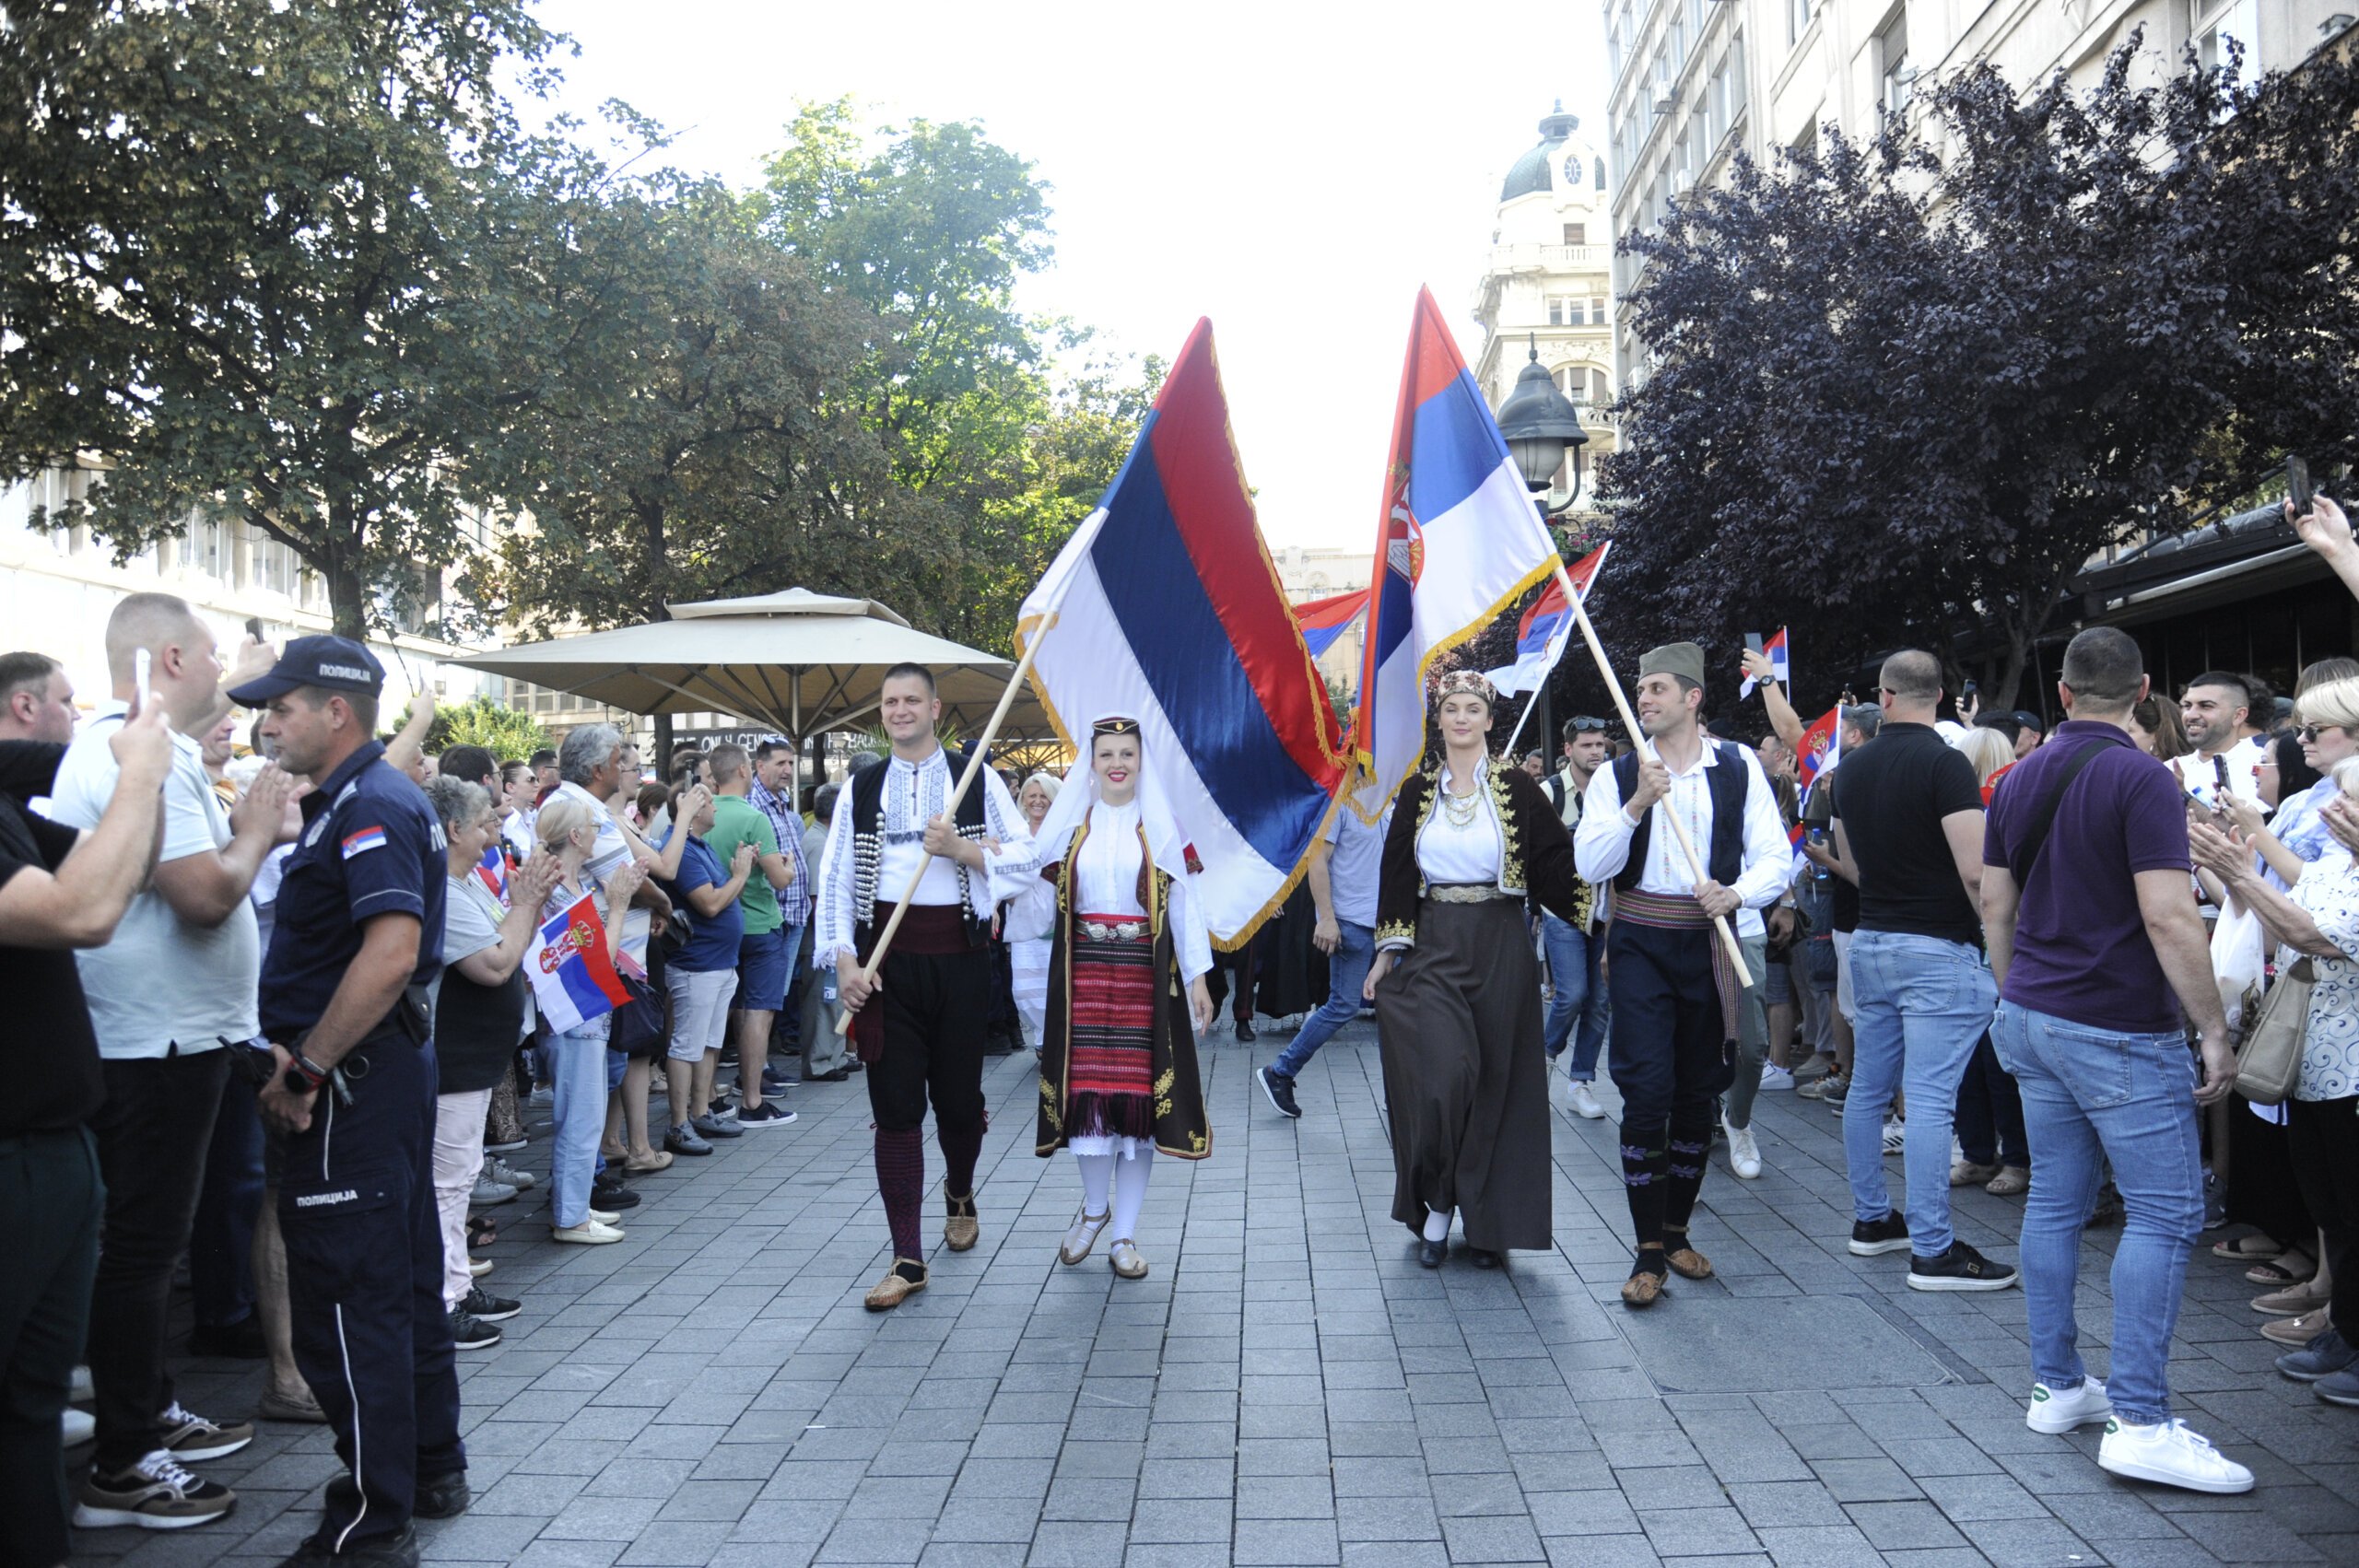 (FOTO) Kako je izgledala manifestacija "Jedan narod, jedan sabor - Srbija i Srpska" na Trgu republike u fotografijama? 16